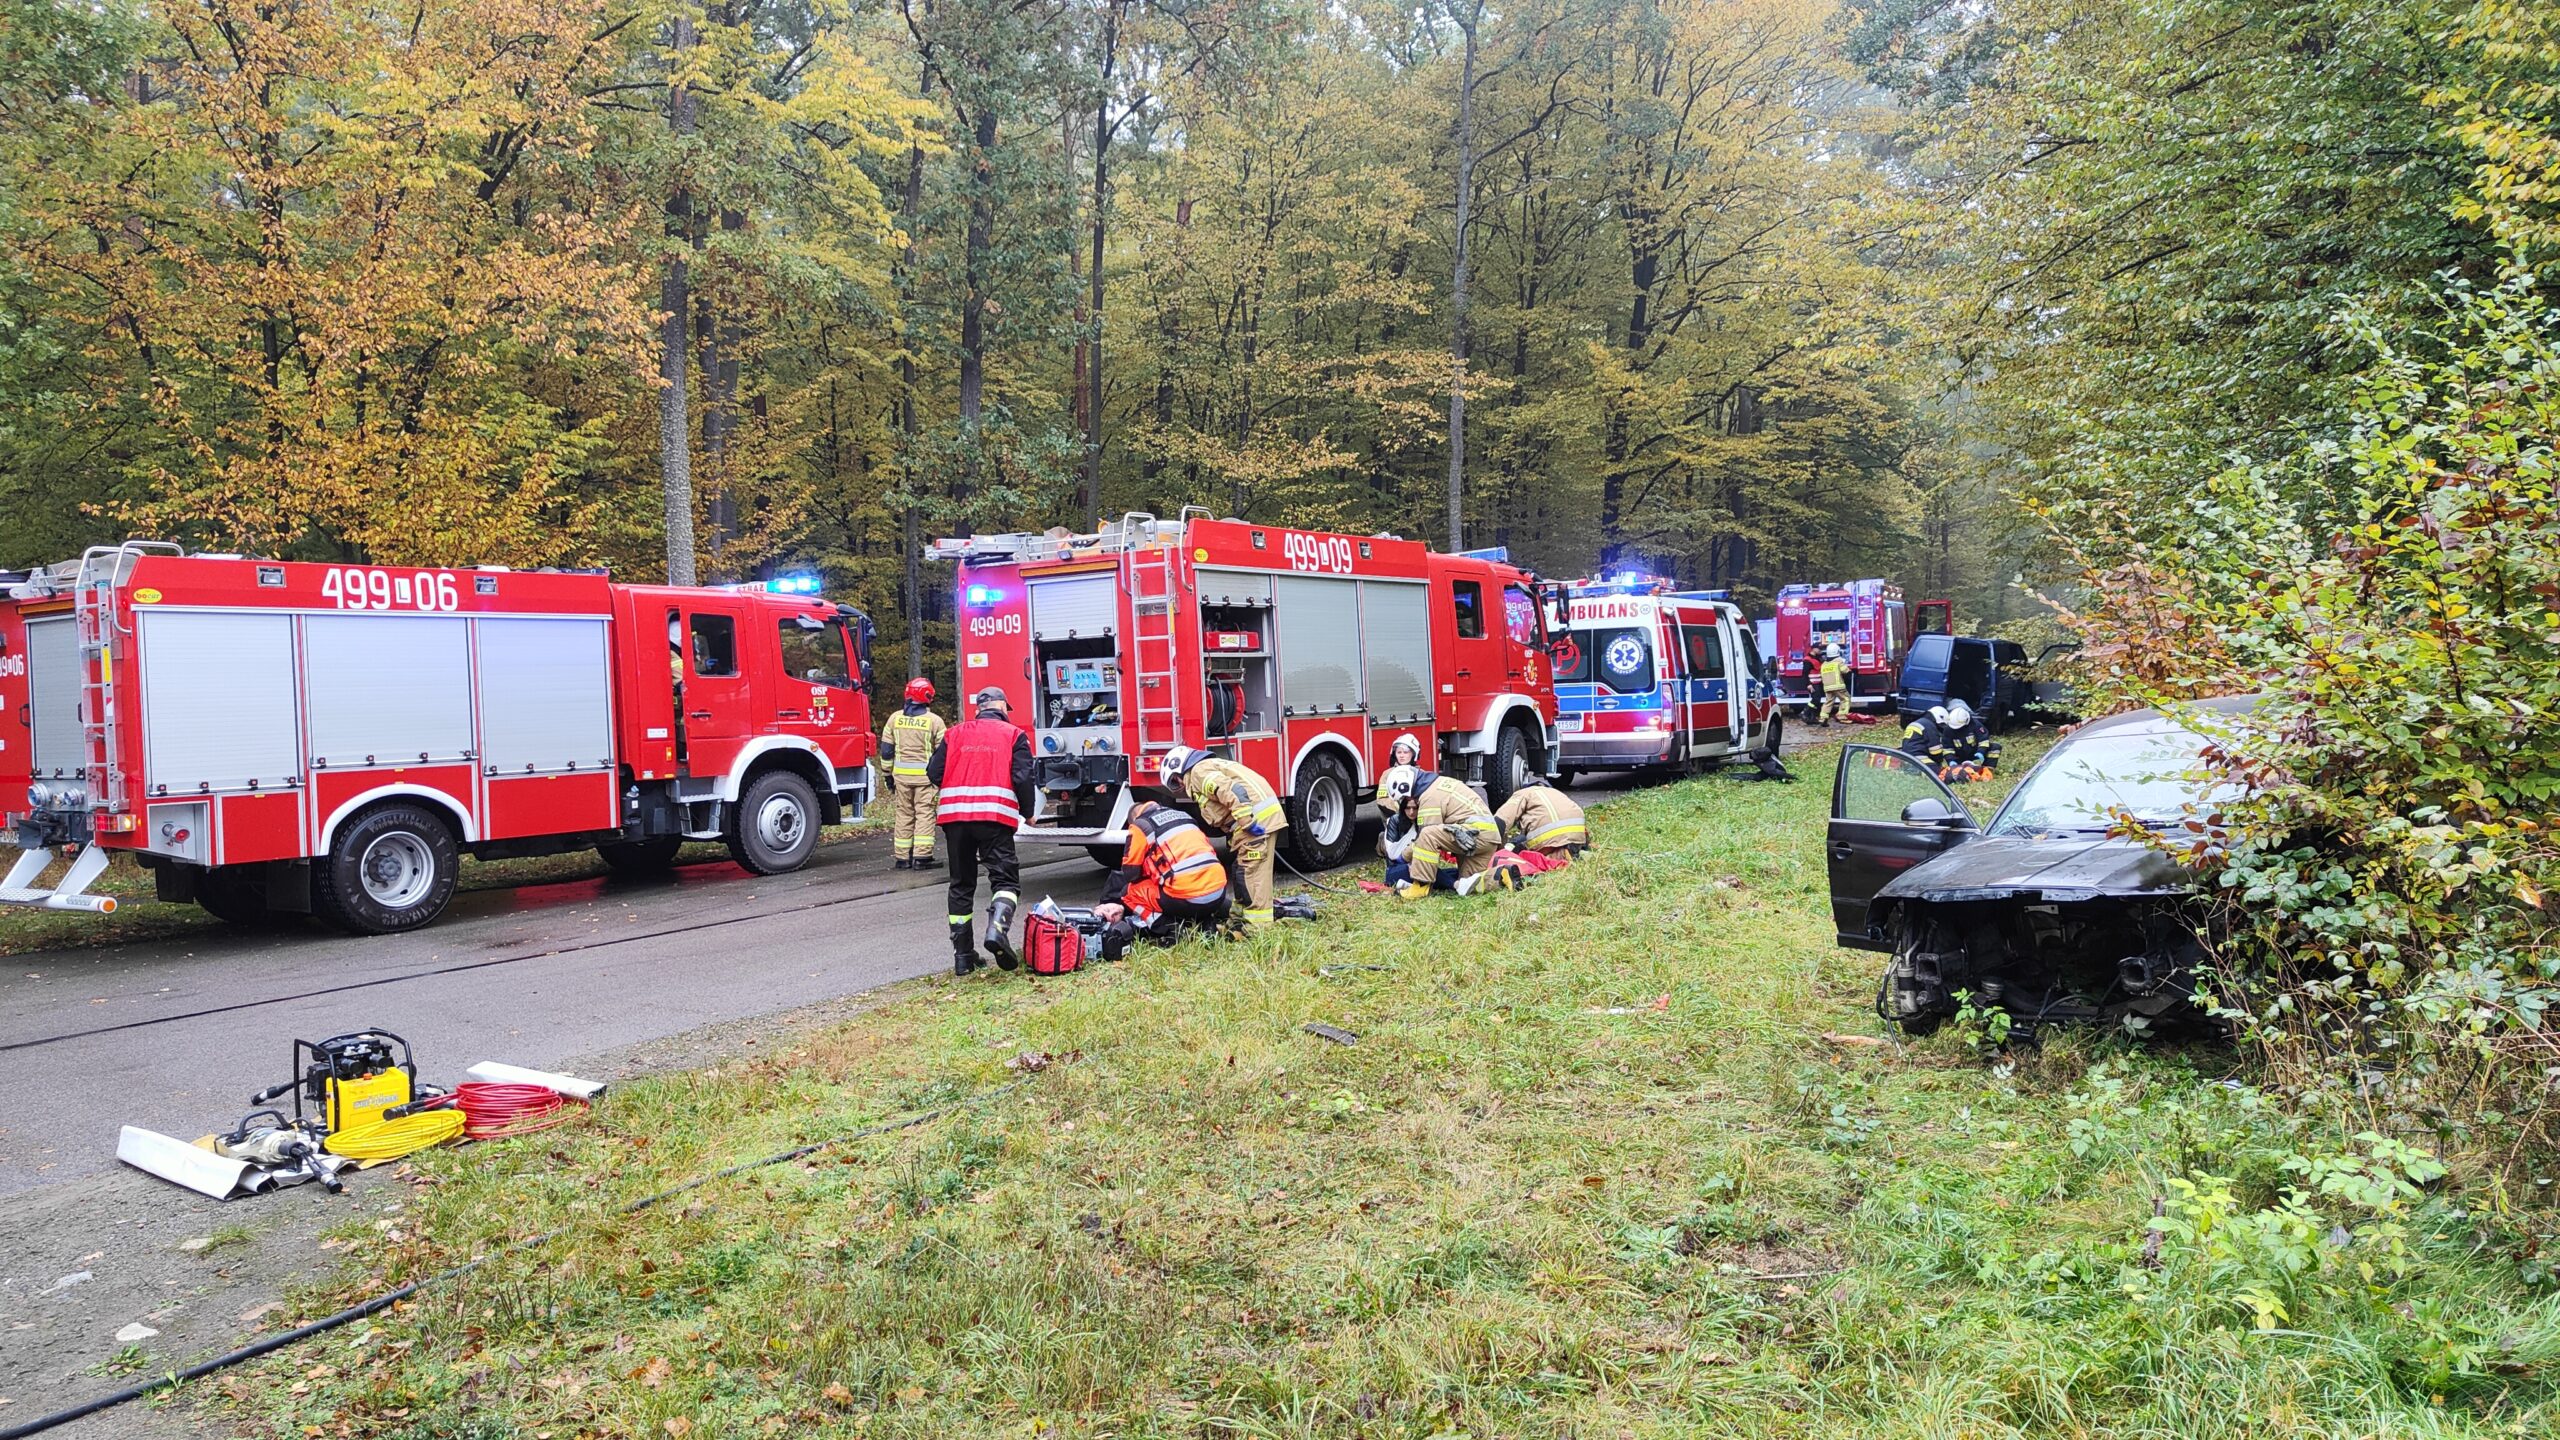 Trzy pojazdy pożarnicze i ambulans ustawione na leśnej drodze. strażacy podzieleni na grupy ćwiczą udzielanie pierwszej pomocy przedmedycznej. Po prawej stronie w krzakach znajduje się rozbity samochód osobowy.